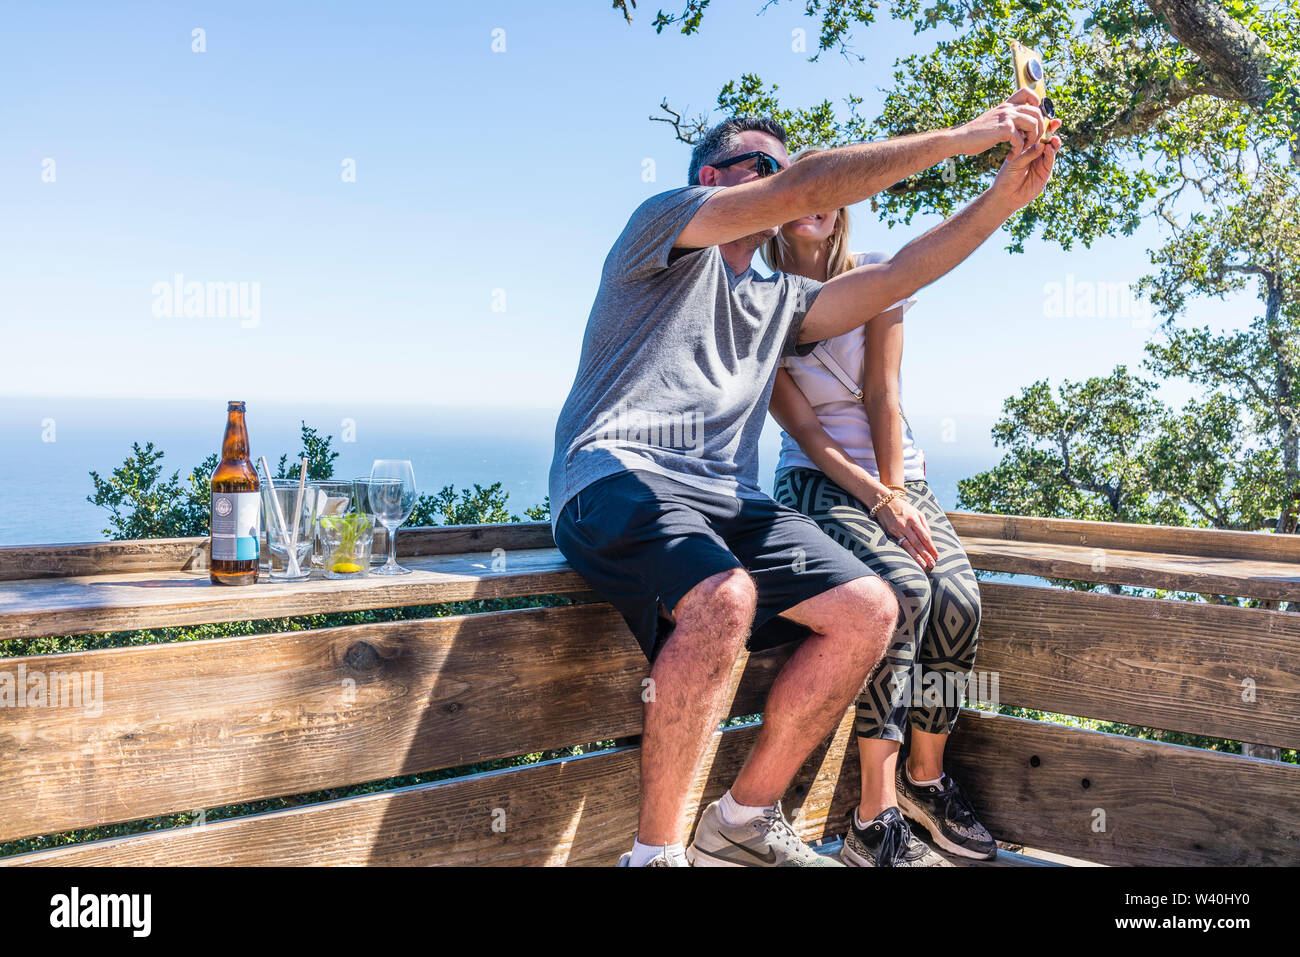 Einem erwachsenen Paar sitzt auf einer Holzbank mit Blick auf die Central Coast Kalifornien und nimmt eine selfie ihre Reise zu dokumentieren. Stockfoto